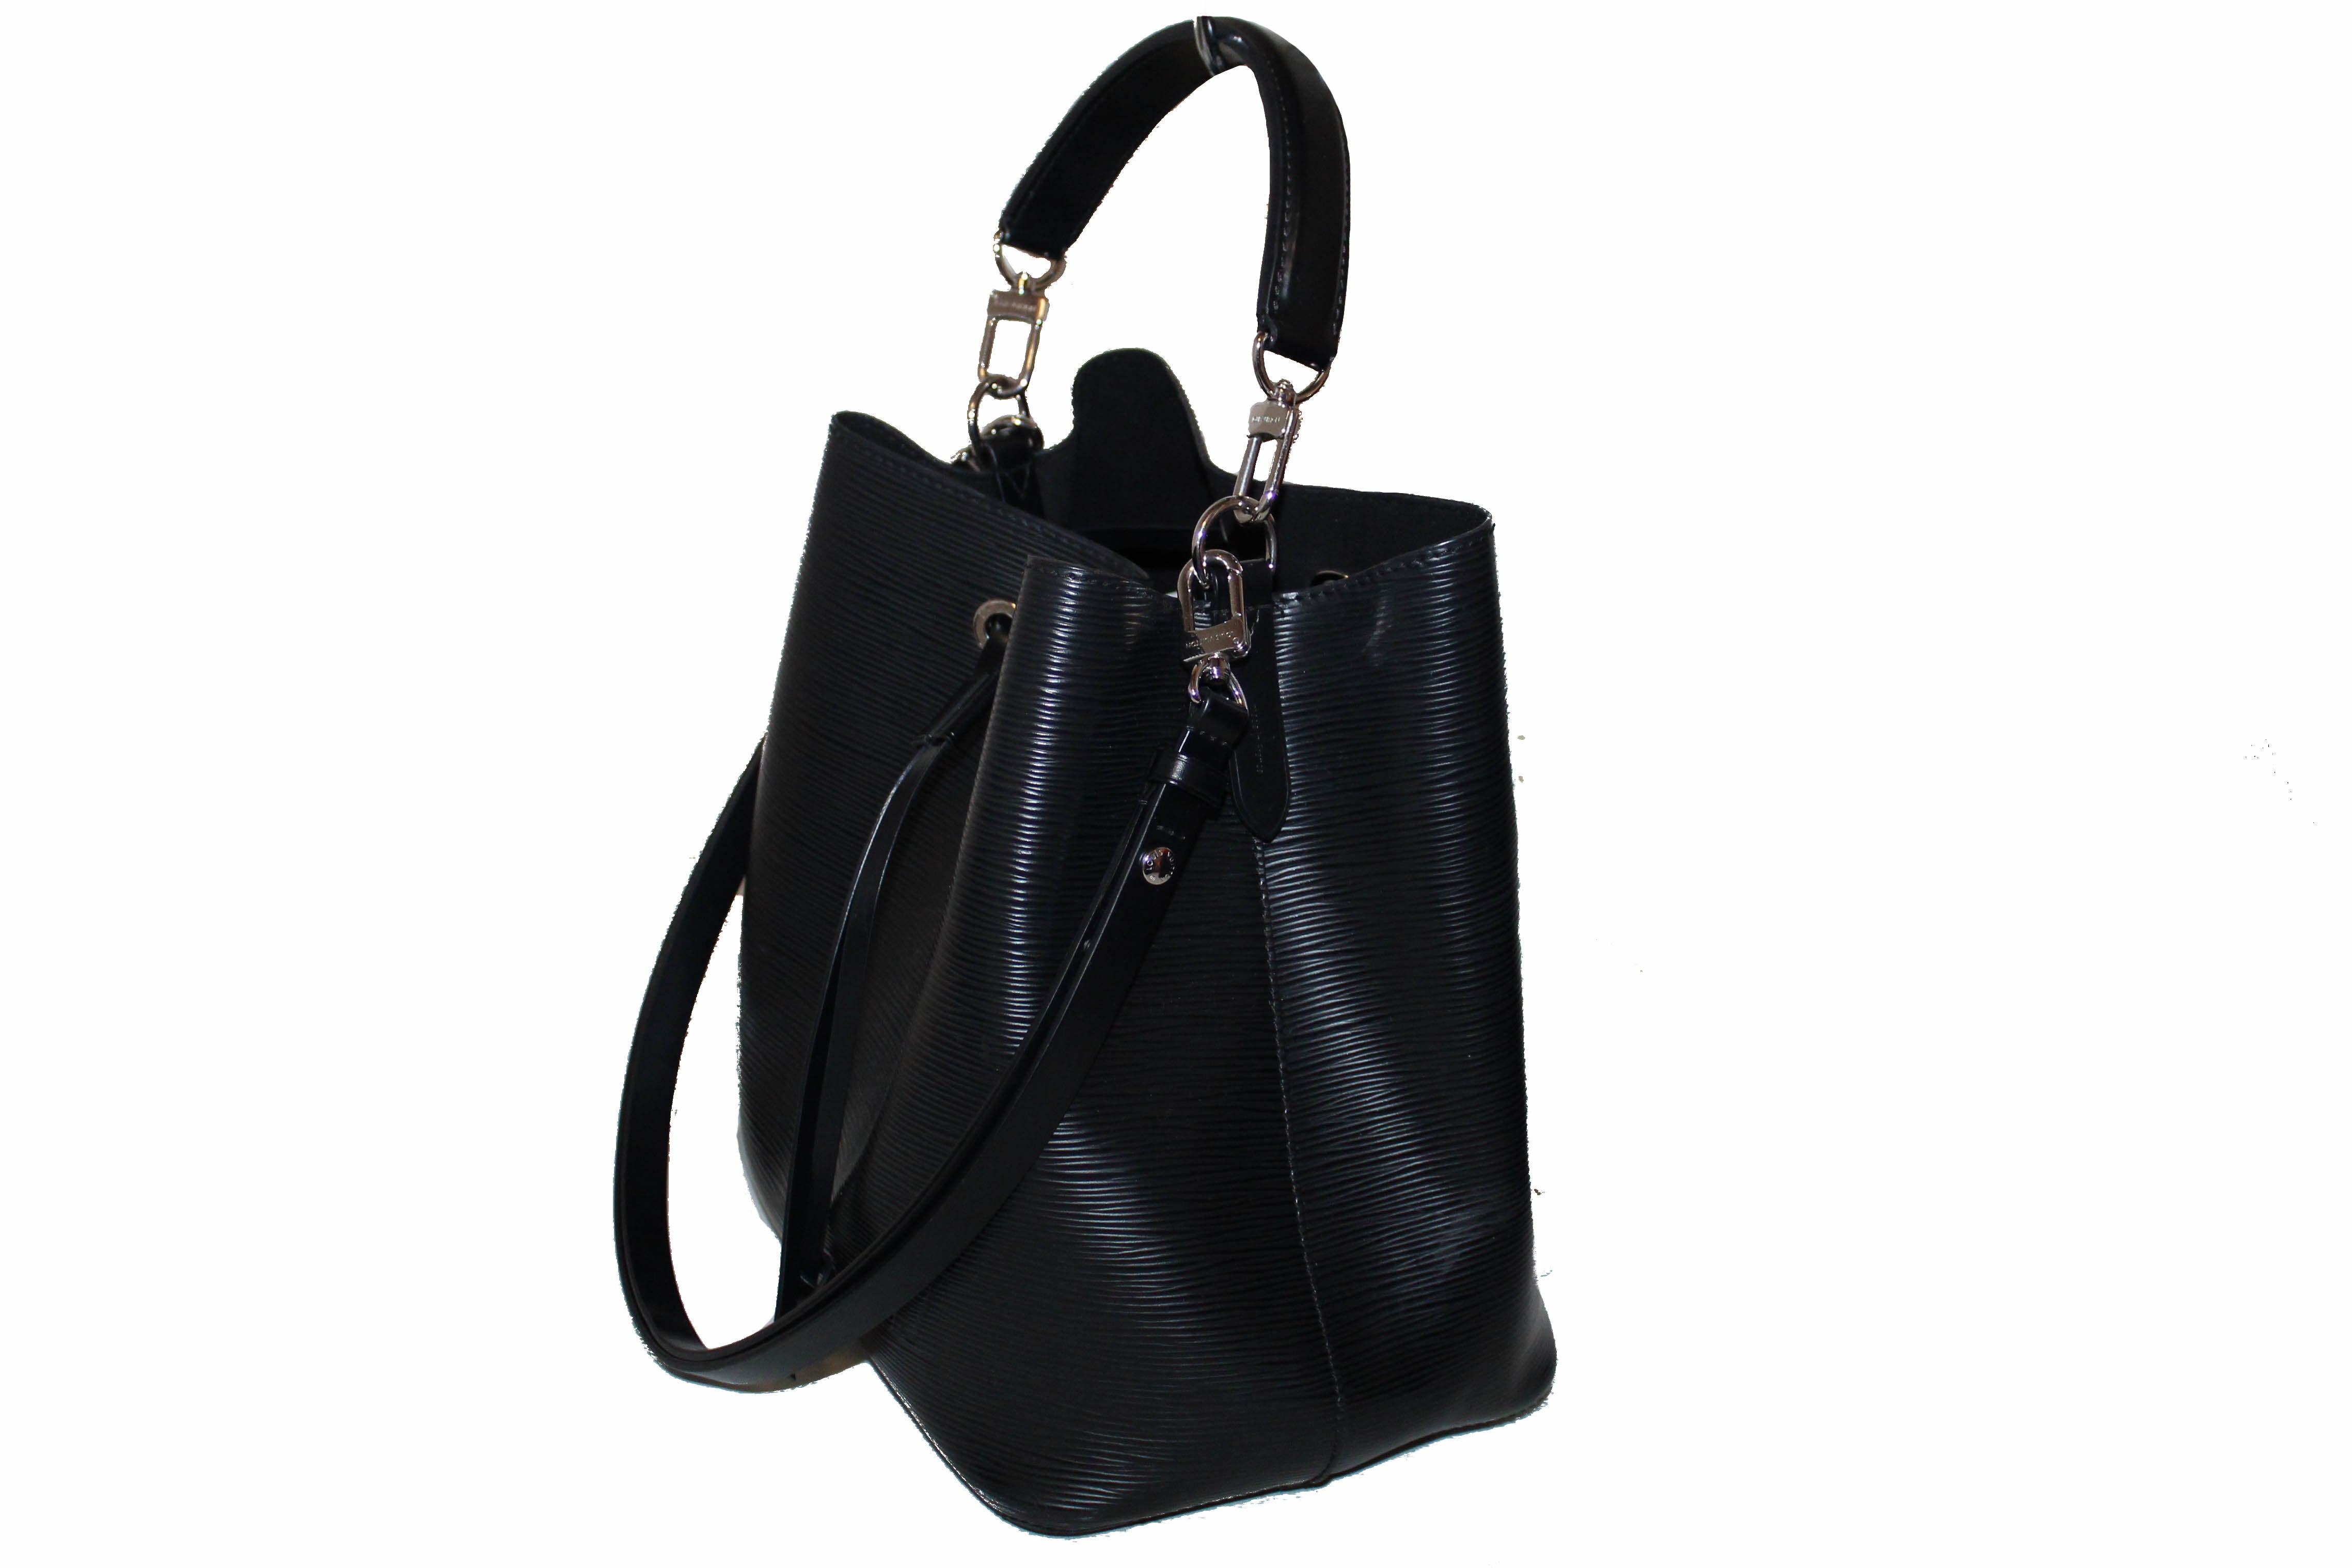 Authentic Louis Vuitton Black Epi Leather NeoNoe MM Bag – Paris Station Shop